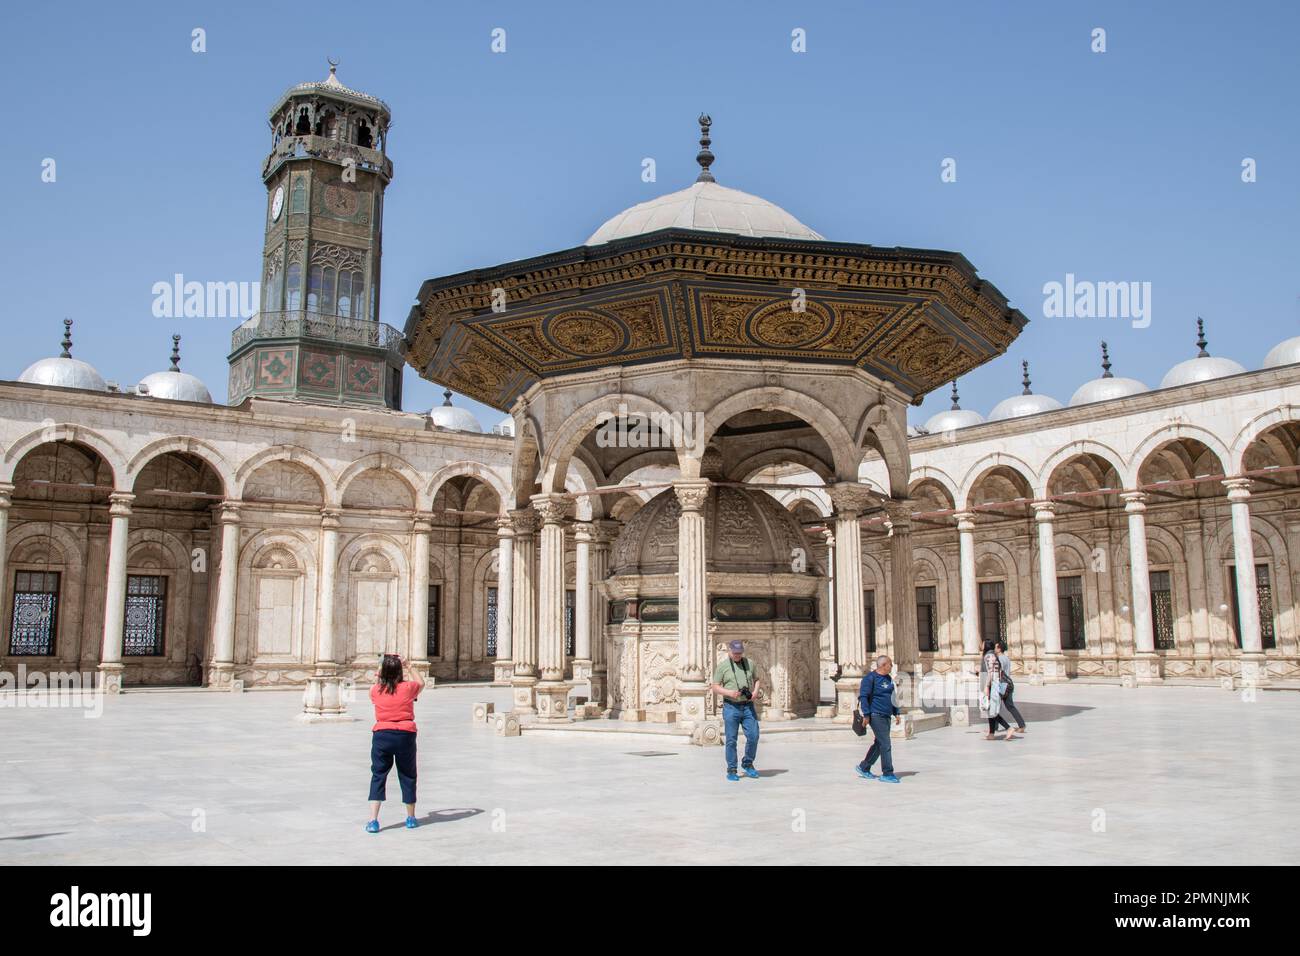 La fontana dell'abluzione nel cortile della Moschea di Muhammad Ali alla Cittadella del Cairo / Cittadella Saladino al Cairo, Egitto Foto Stock